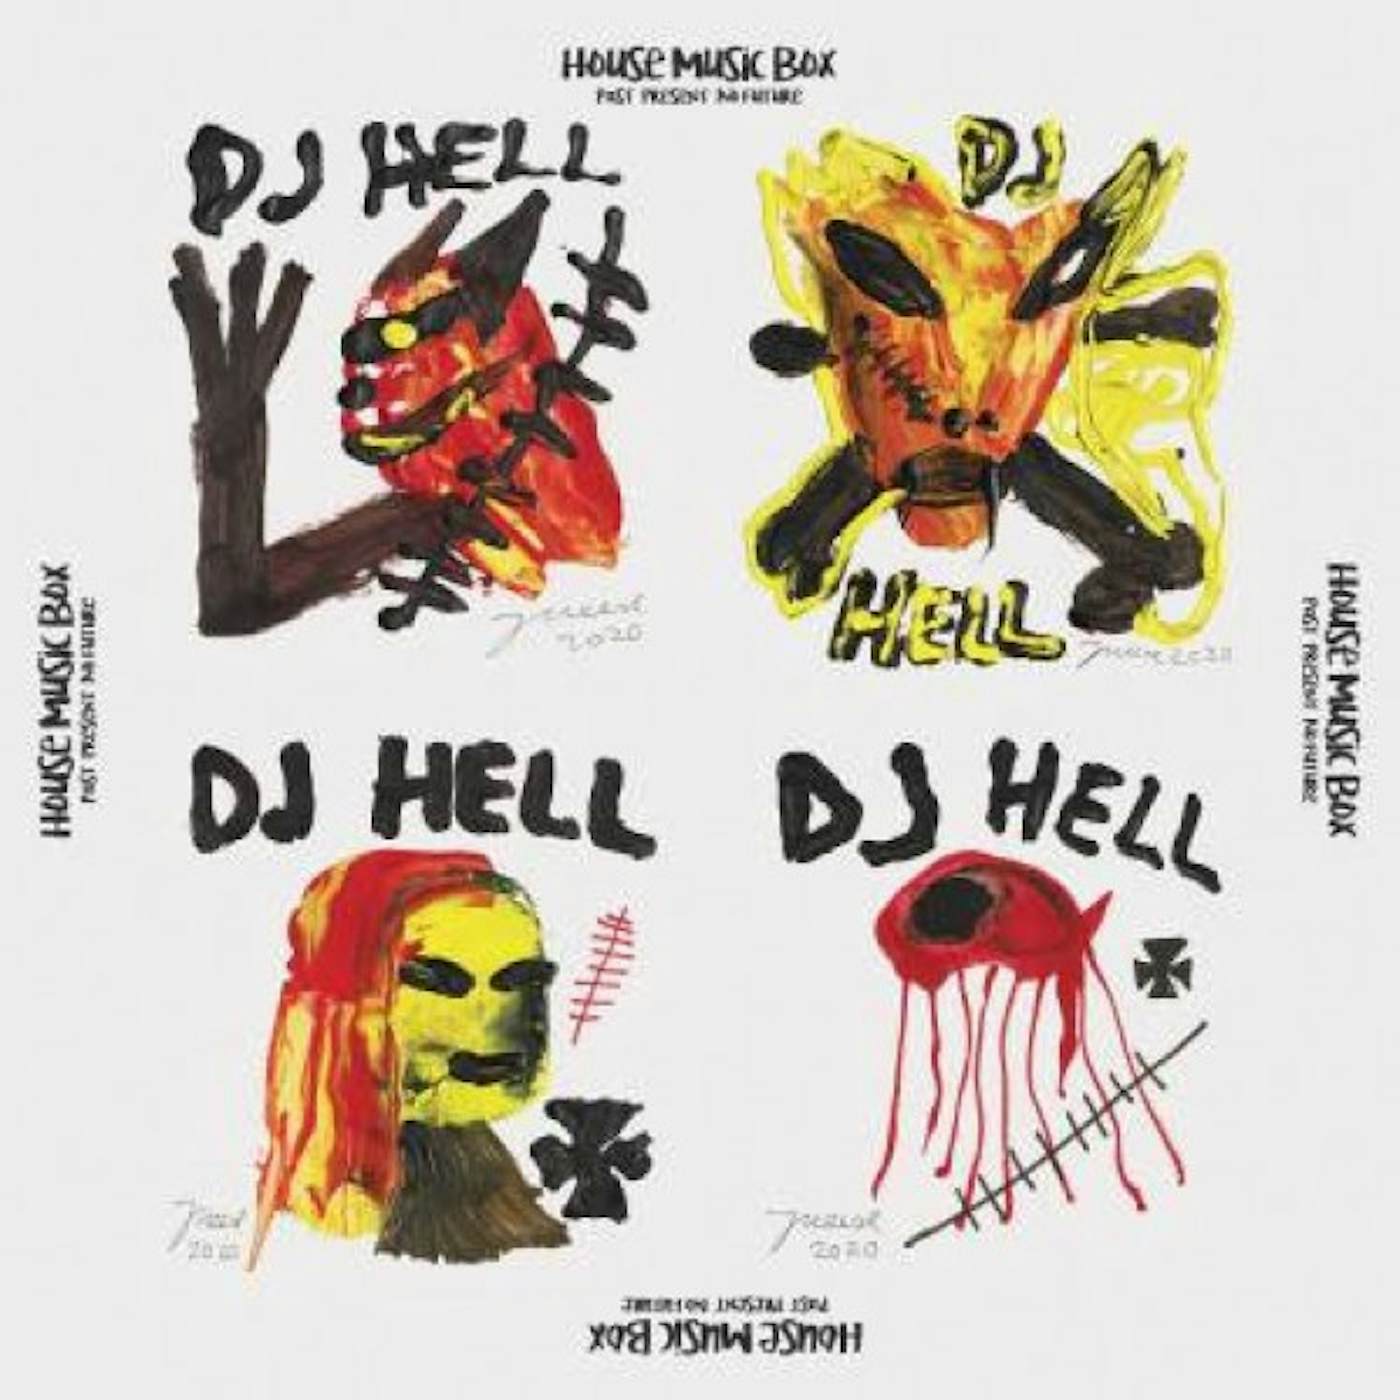 DJ Hell HOUSE MUSIC BOX REMIXES ( FLUEGEL,ROMAN / PEREL ) (Vinyl)